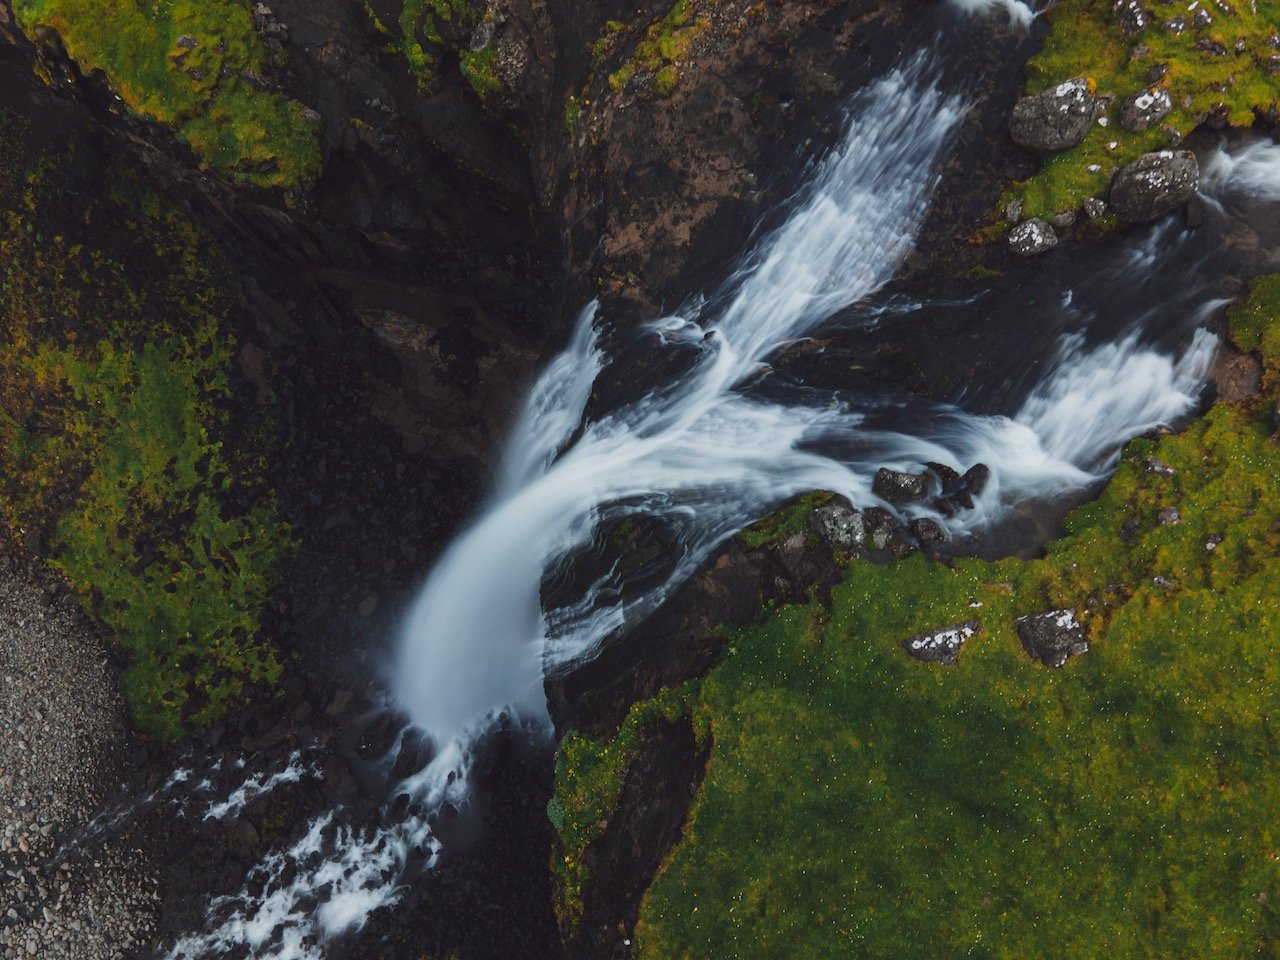   Skarðsáfossur Waterfall, Vágar, Faroe Islands (ISO 100, 4.5 mm,  f /2.8, 0.8 s)  